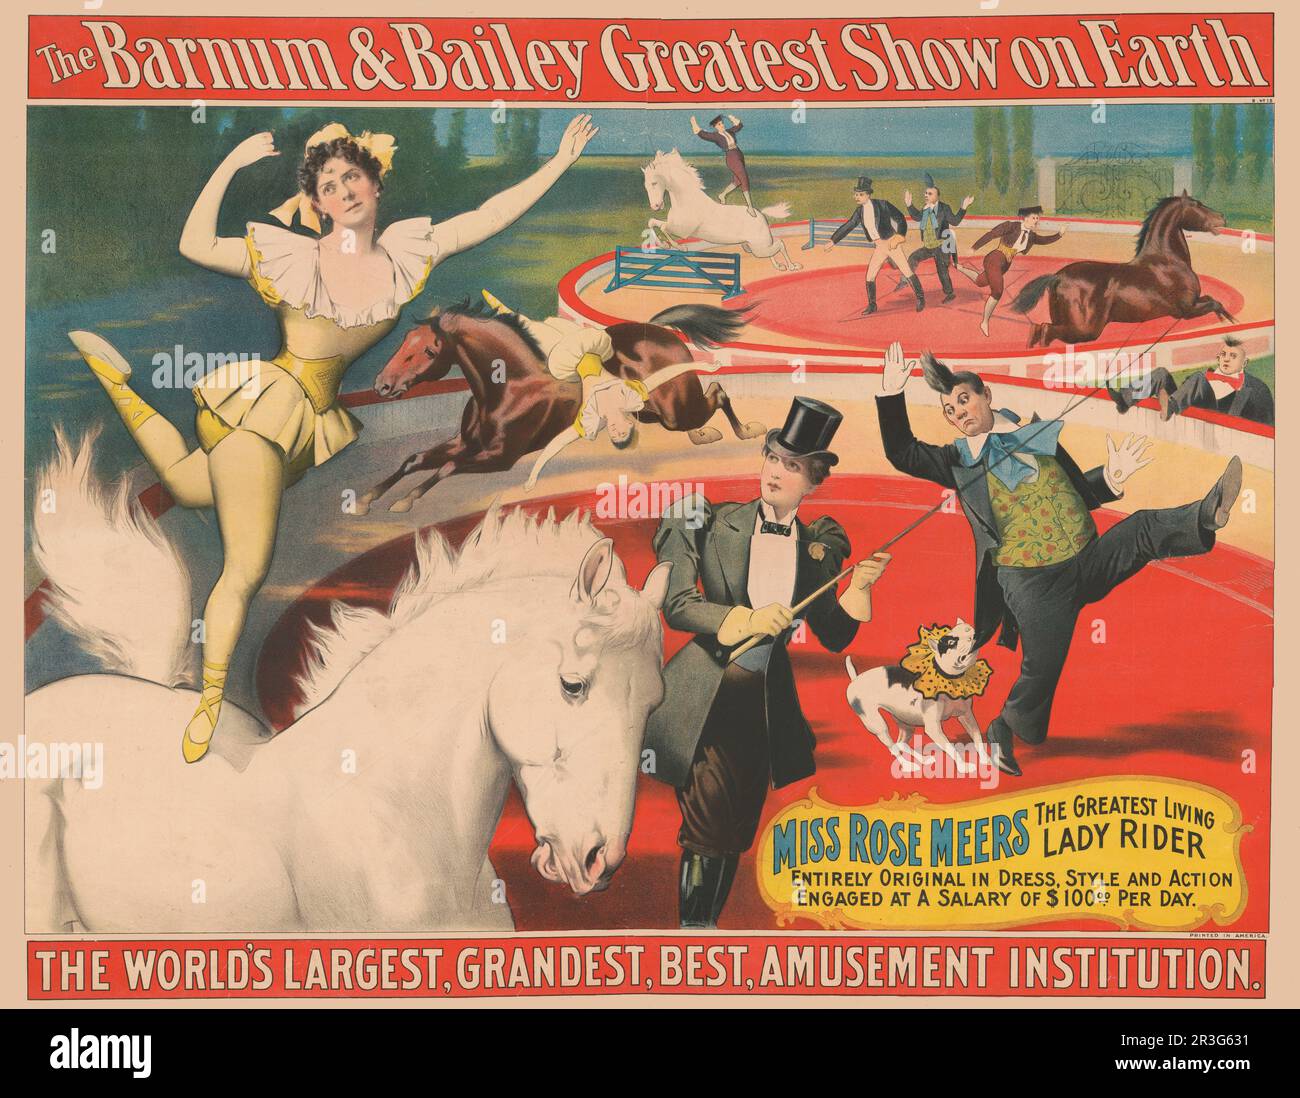 Affiche de cirque vintage Barnum & Bailey montrant Miss Rose Meers debout à cheval sur un pied. vers 1897. Banque D'Images